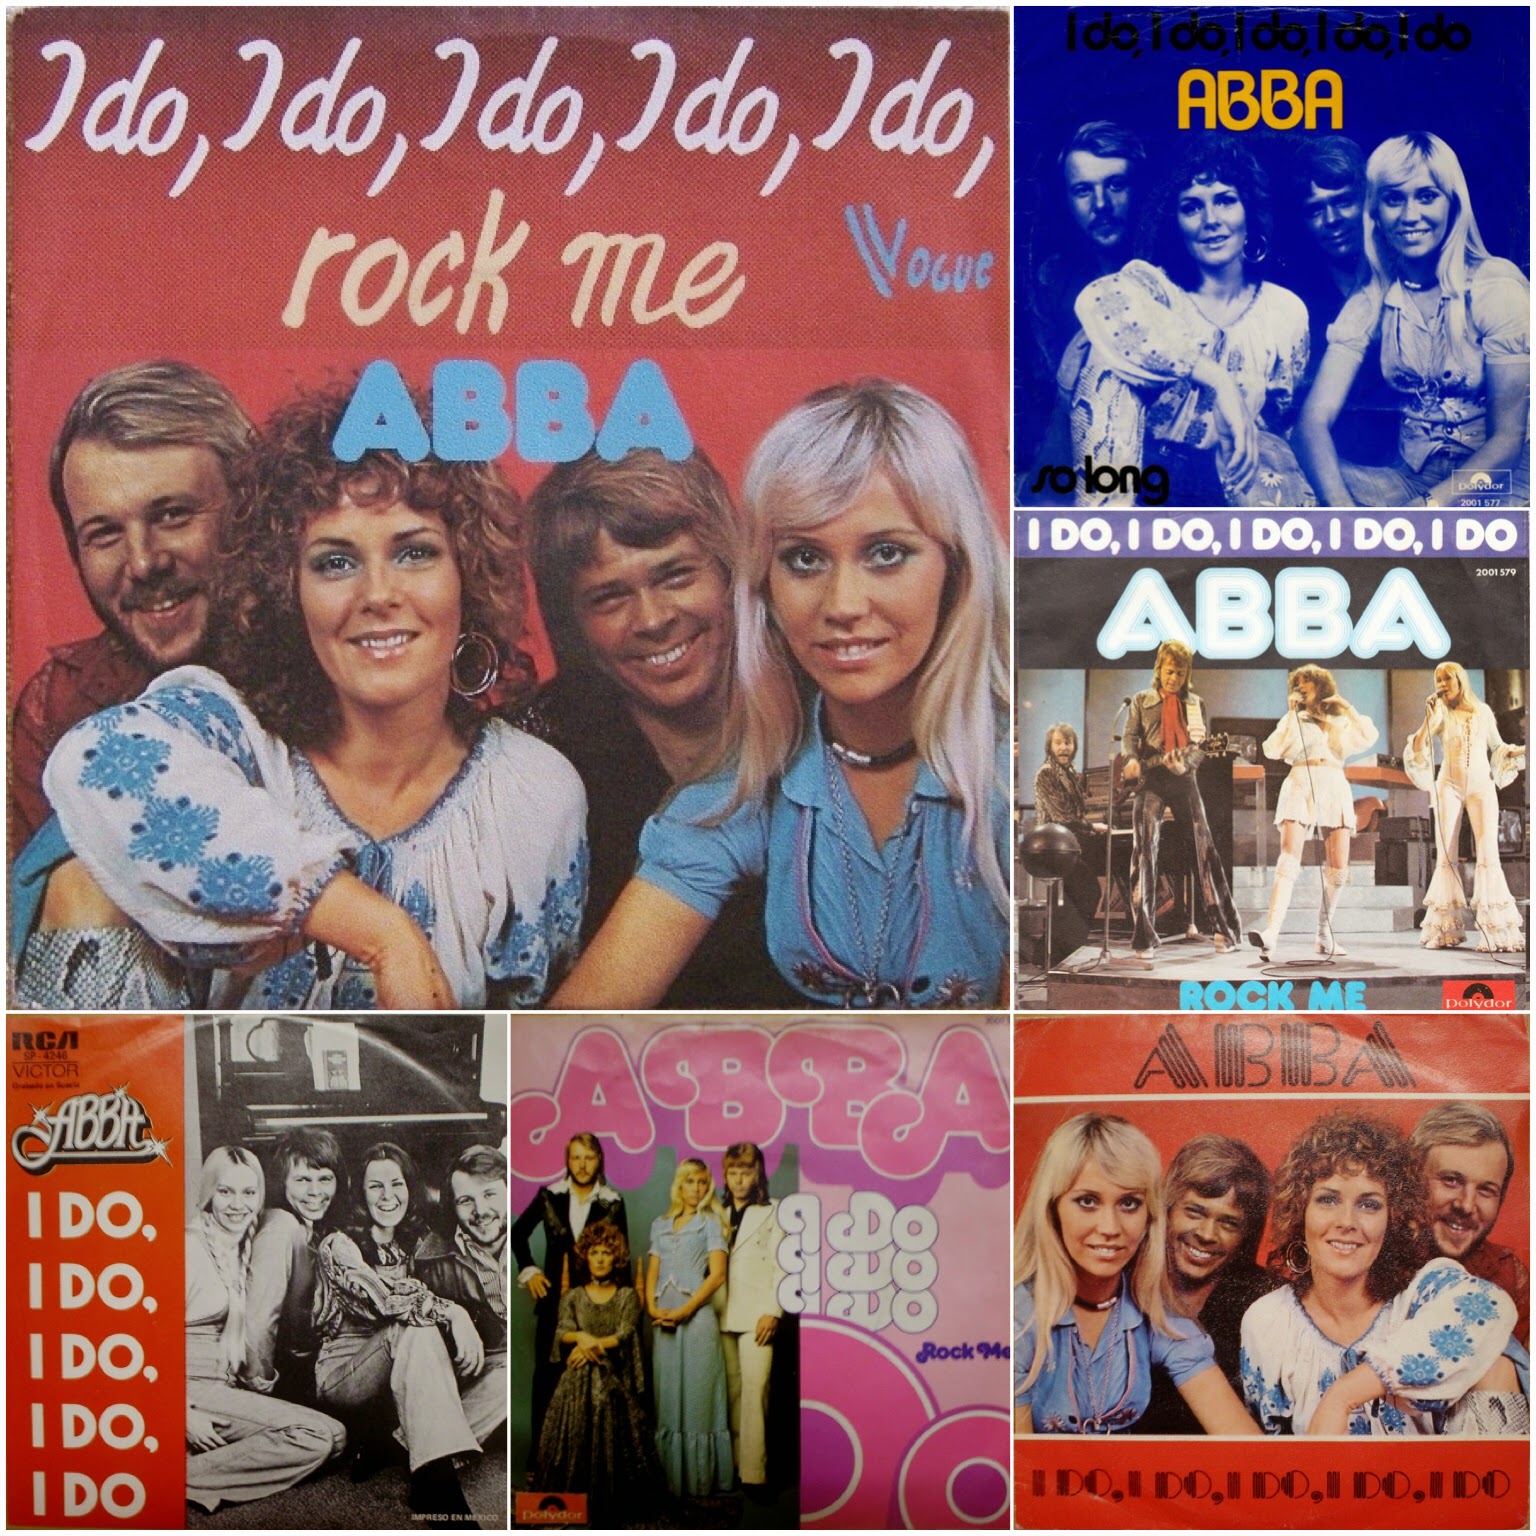 ABBA Fans Blog: More Versions Of Abba's "I Do, I Do, I Do, I Do, I Do"  Single